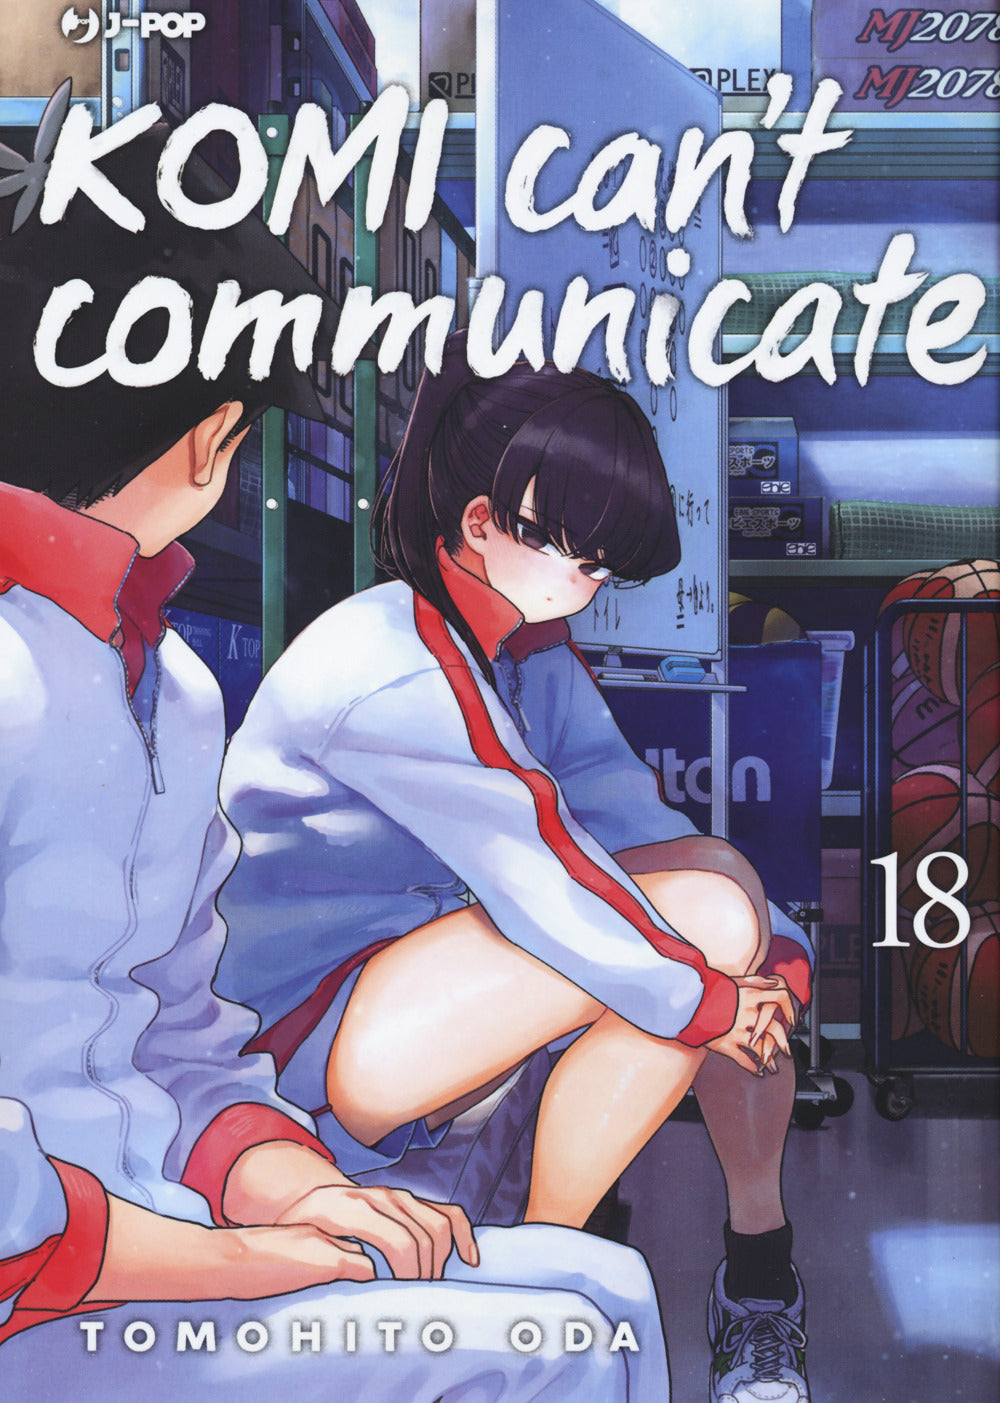 Komi can't communicate. Vol. 18.